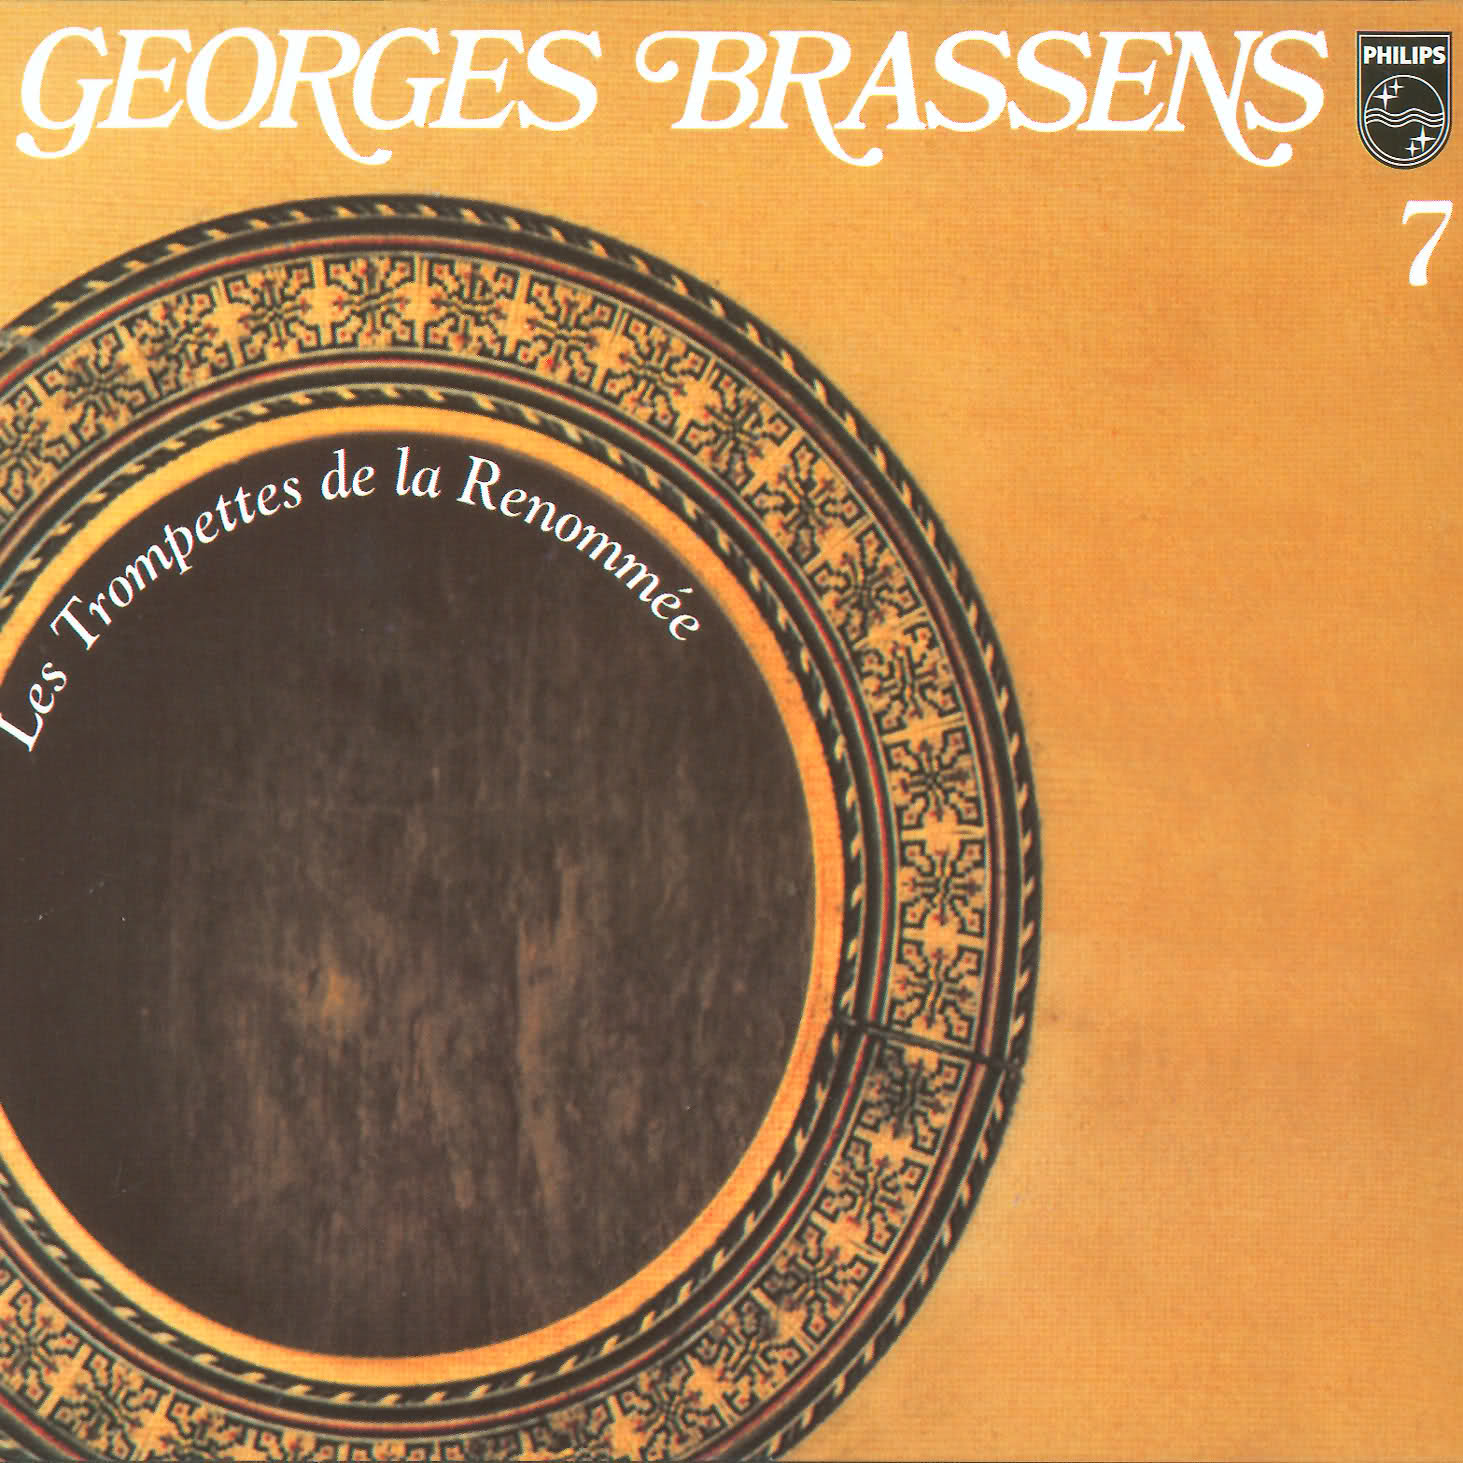 Les trompettes de la renommée Georges Brassens